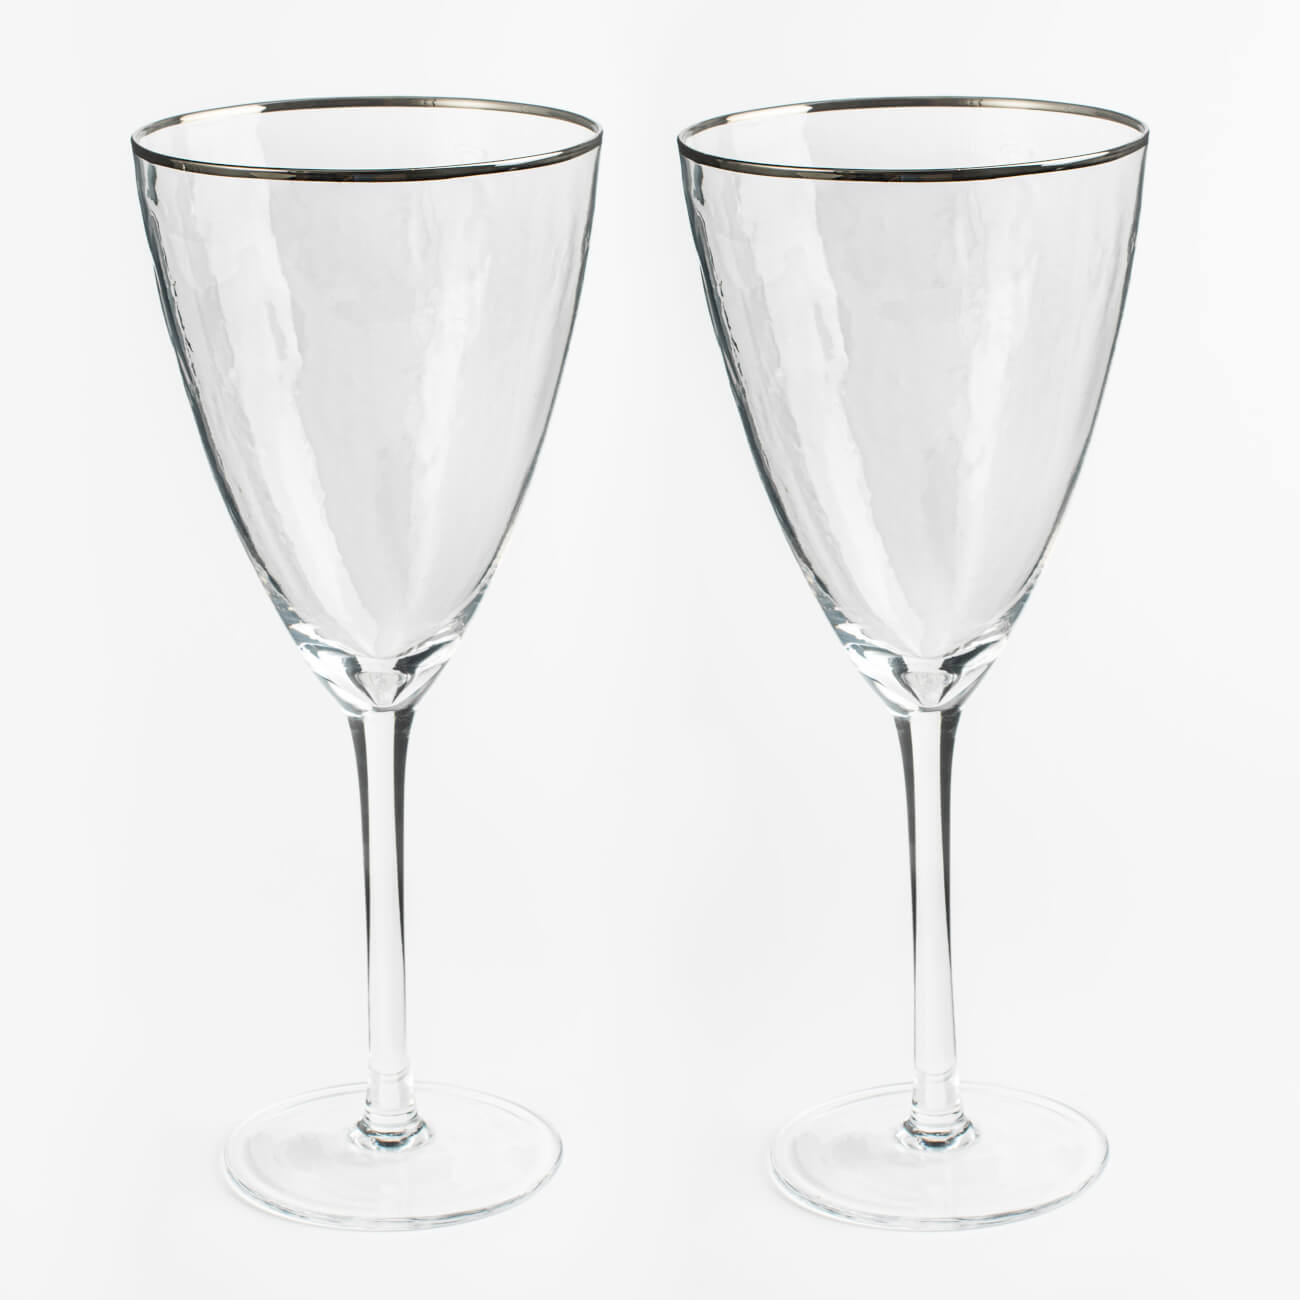 Бокал для вина, 400 мл, 2 шт, стекло, с серебристым кантом, Ripply silver бокал для шампанского 275 мл 2 шт стекло ripply